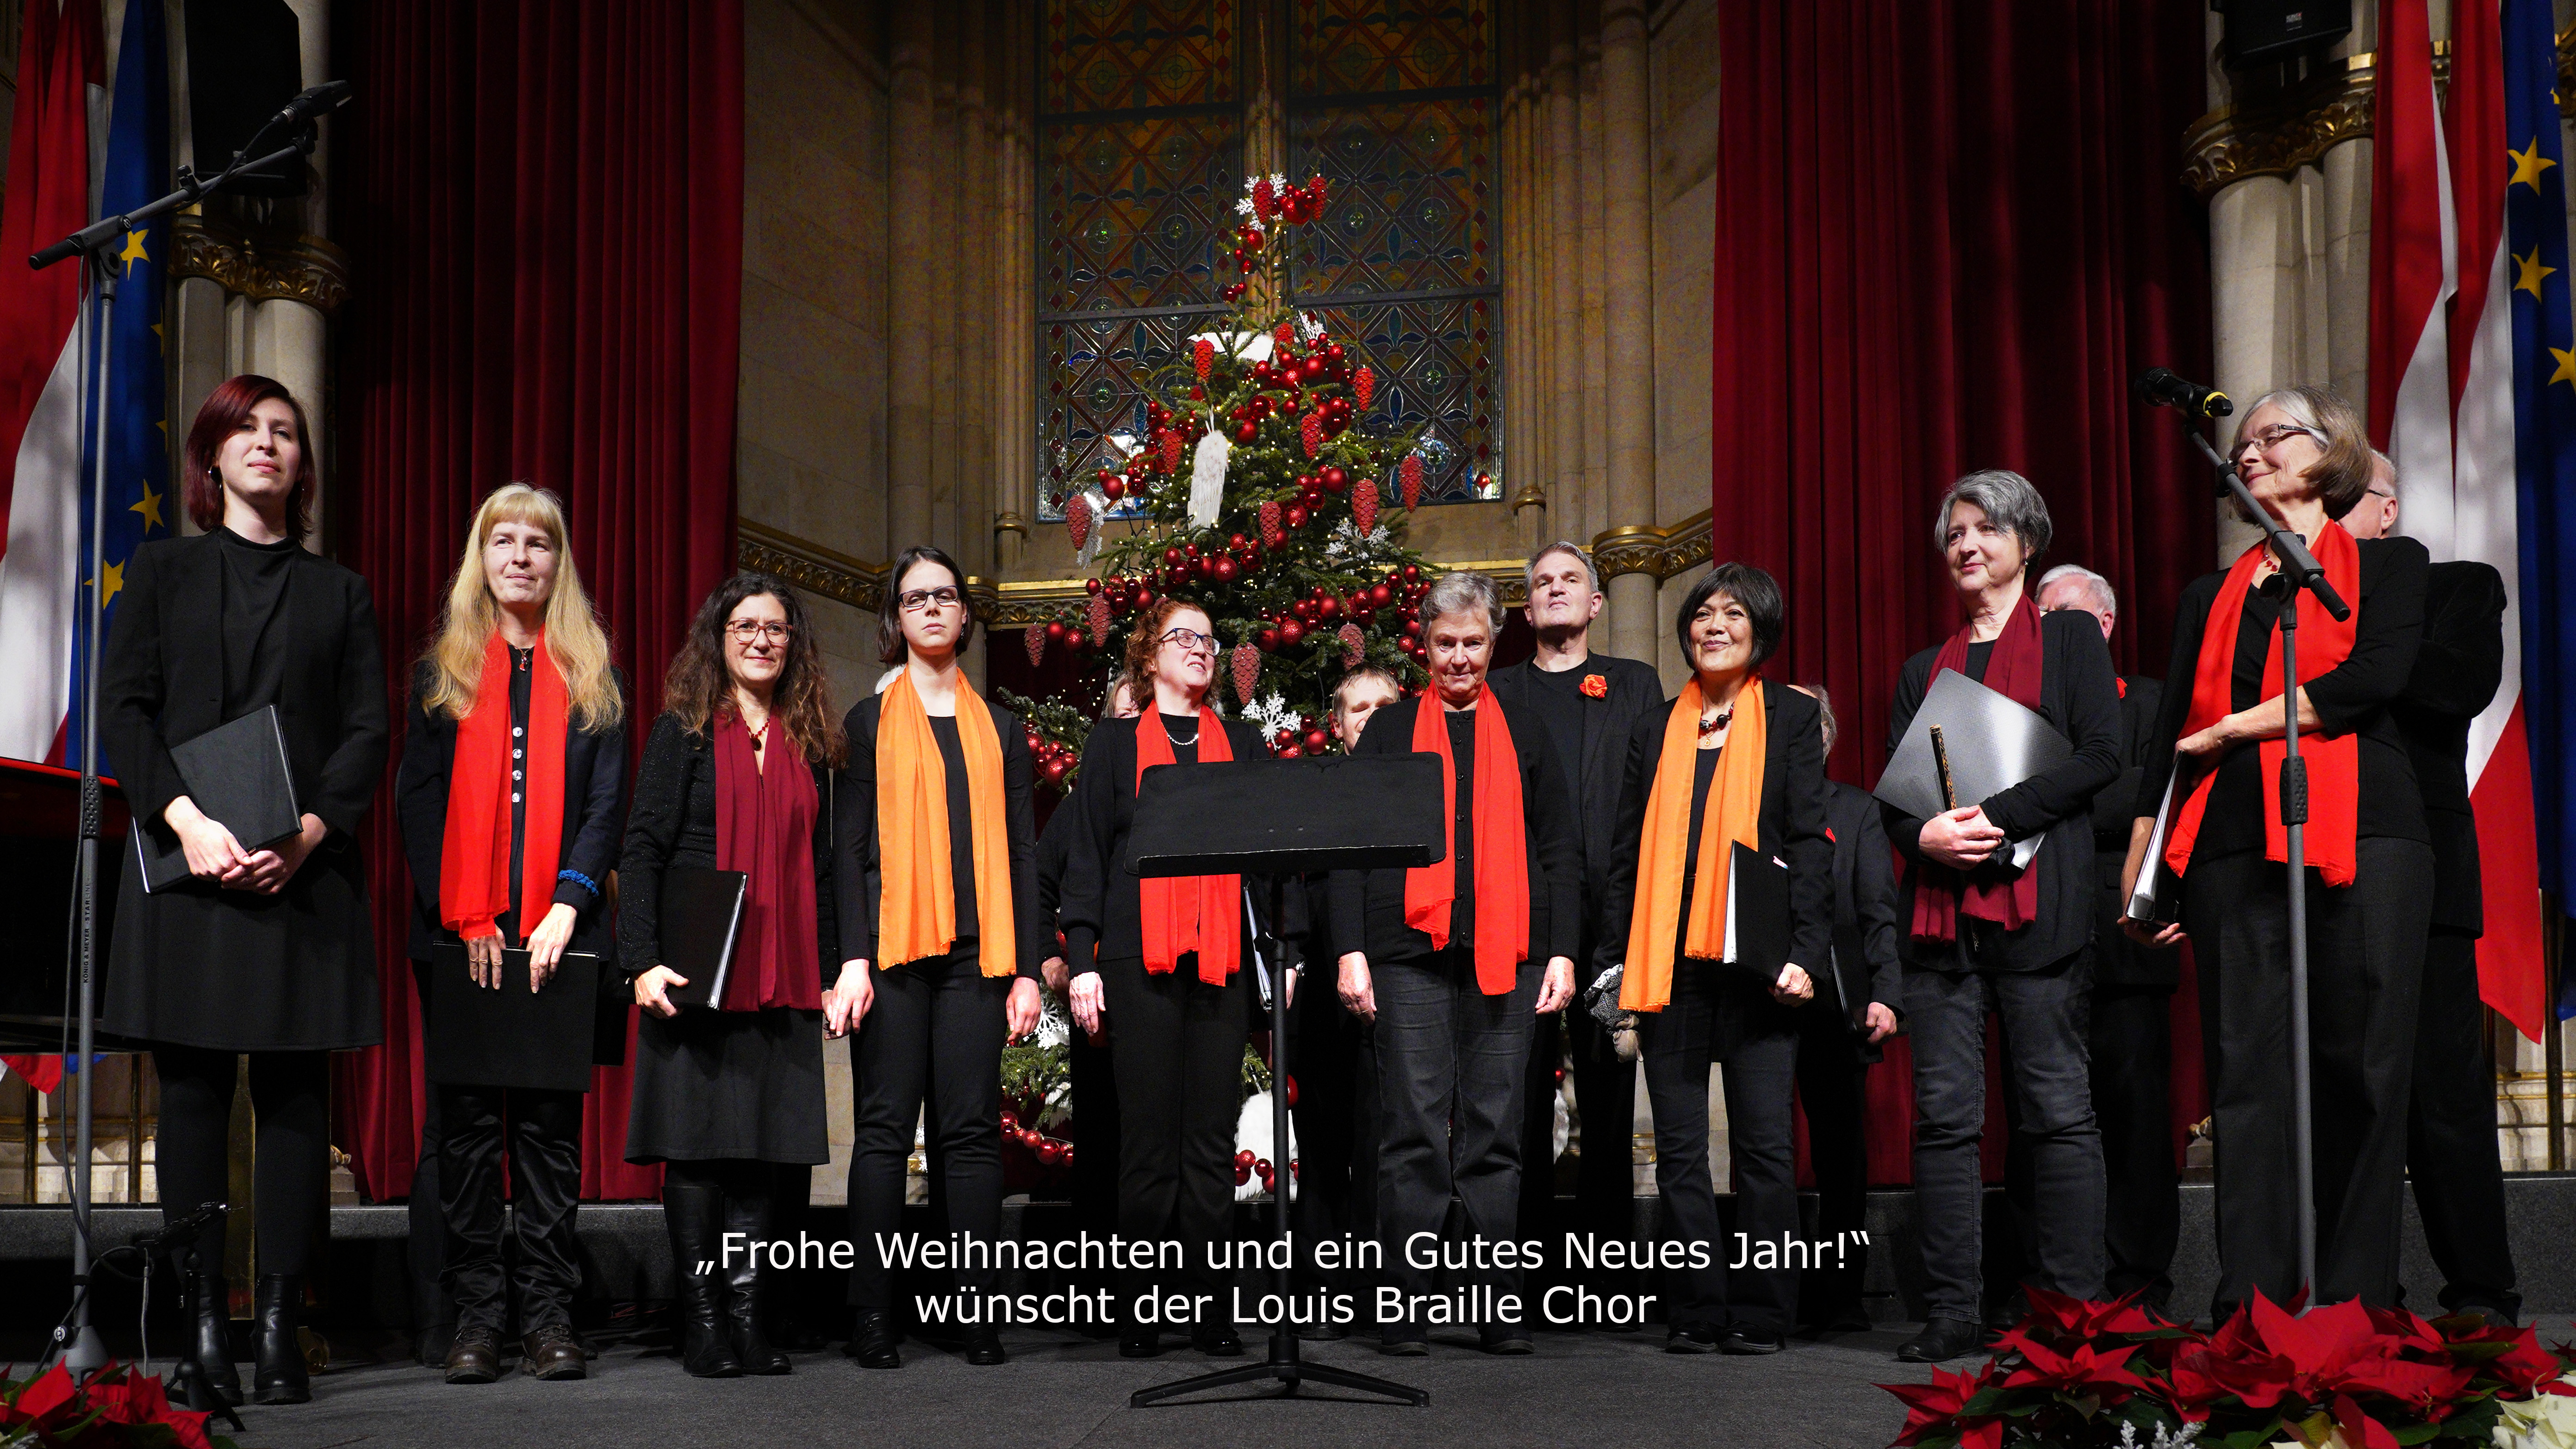 Der Louis Braile Chor wünscht Frohe weihnachten und ein Gutes Neues Jahr!